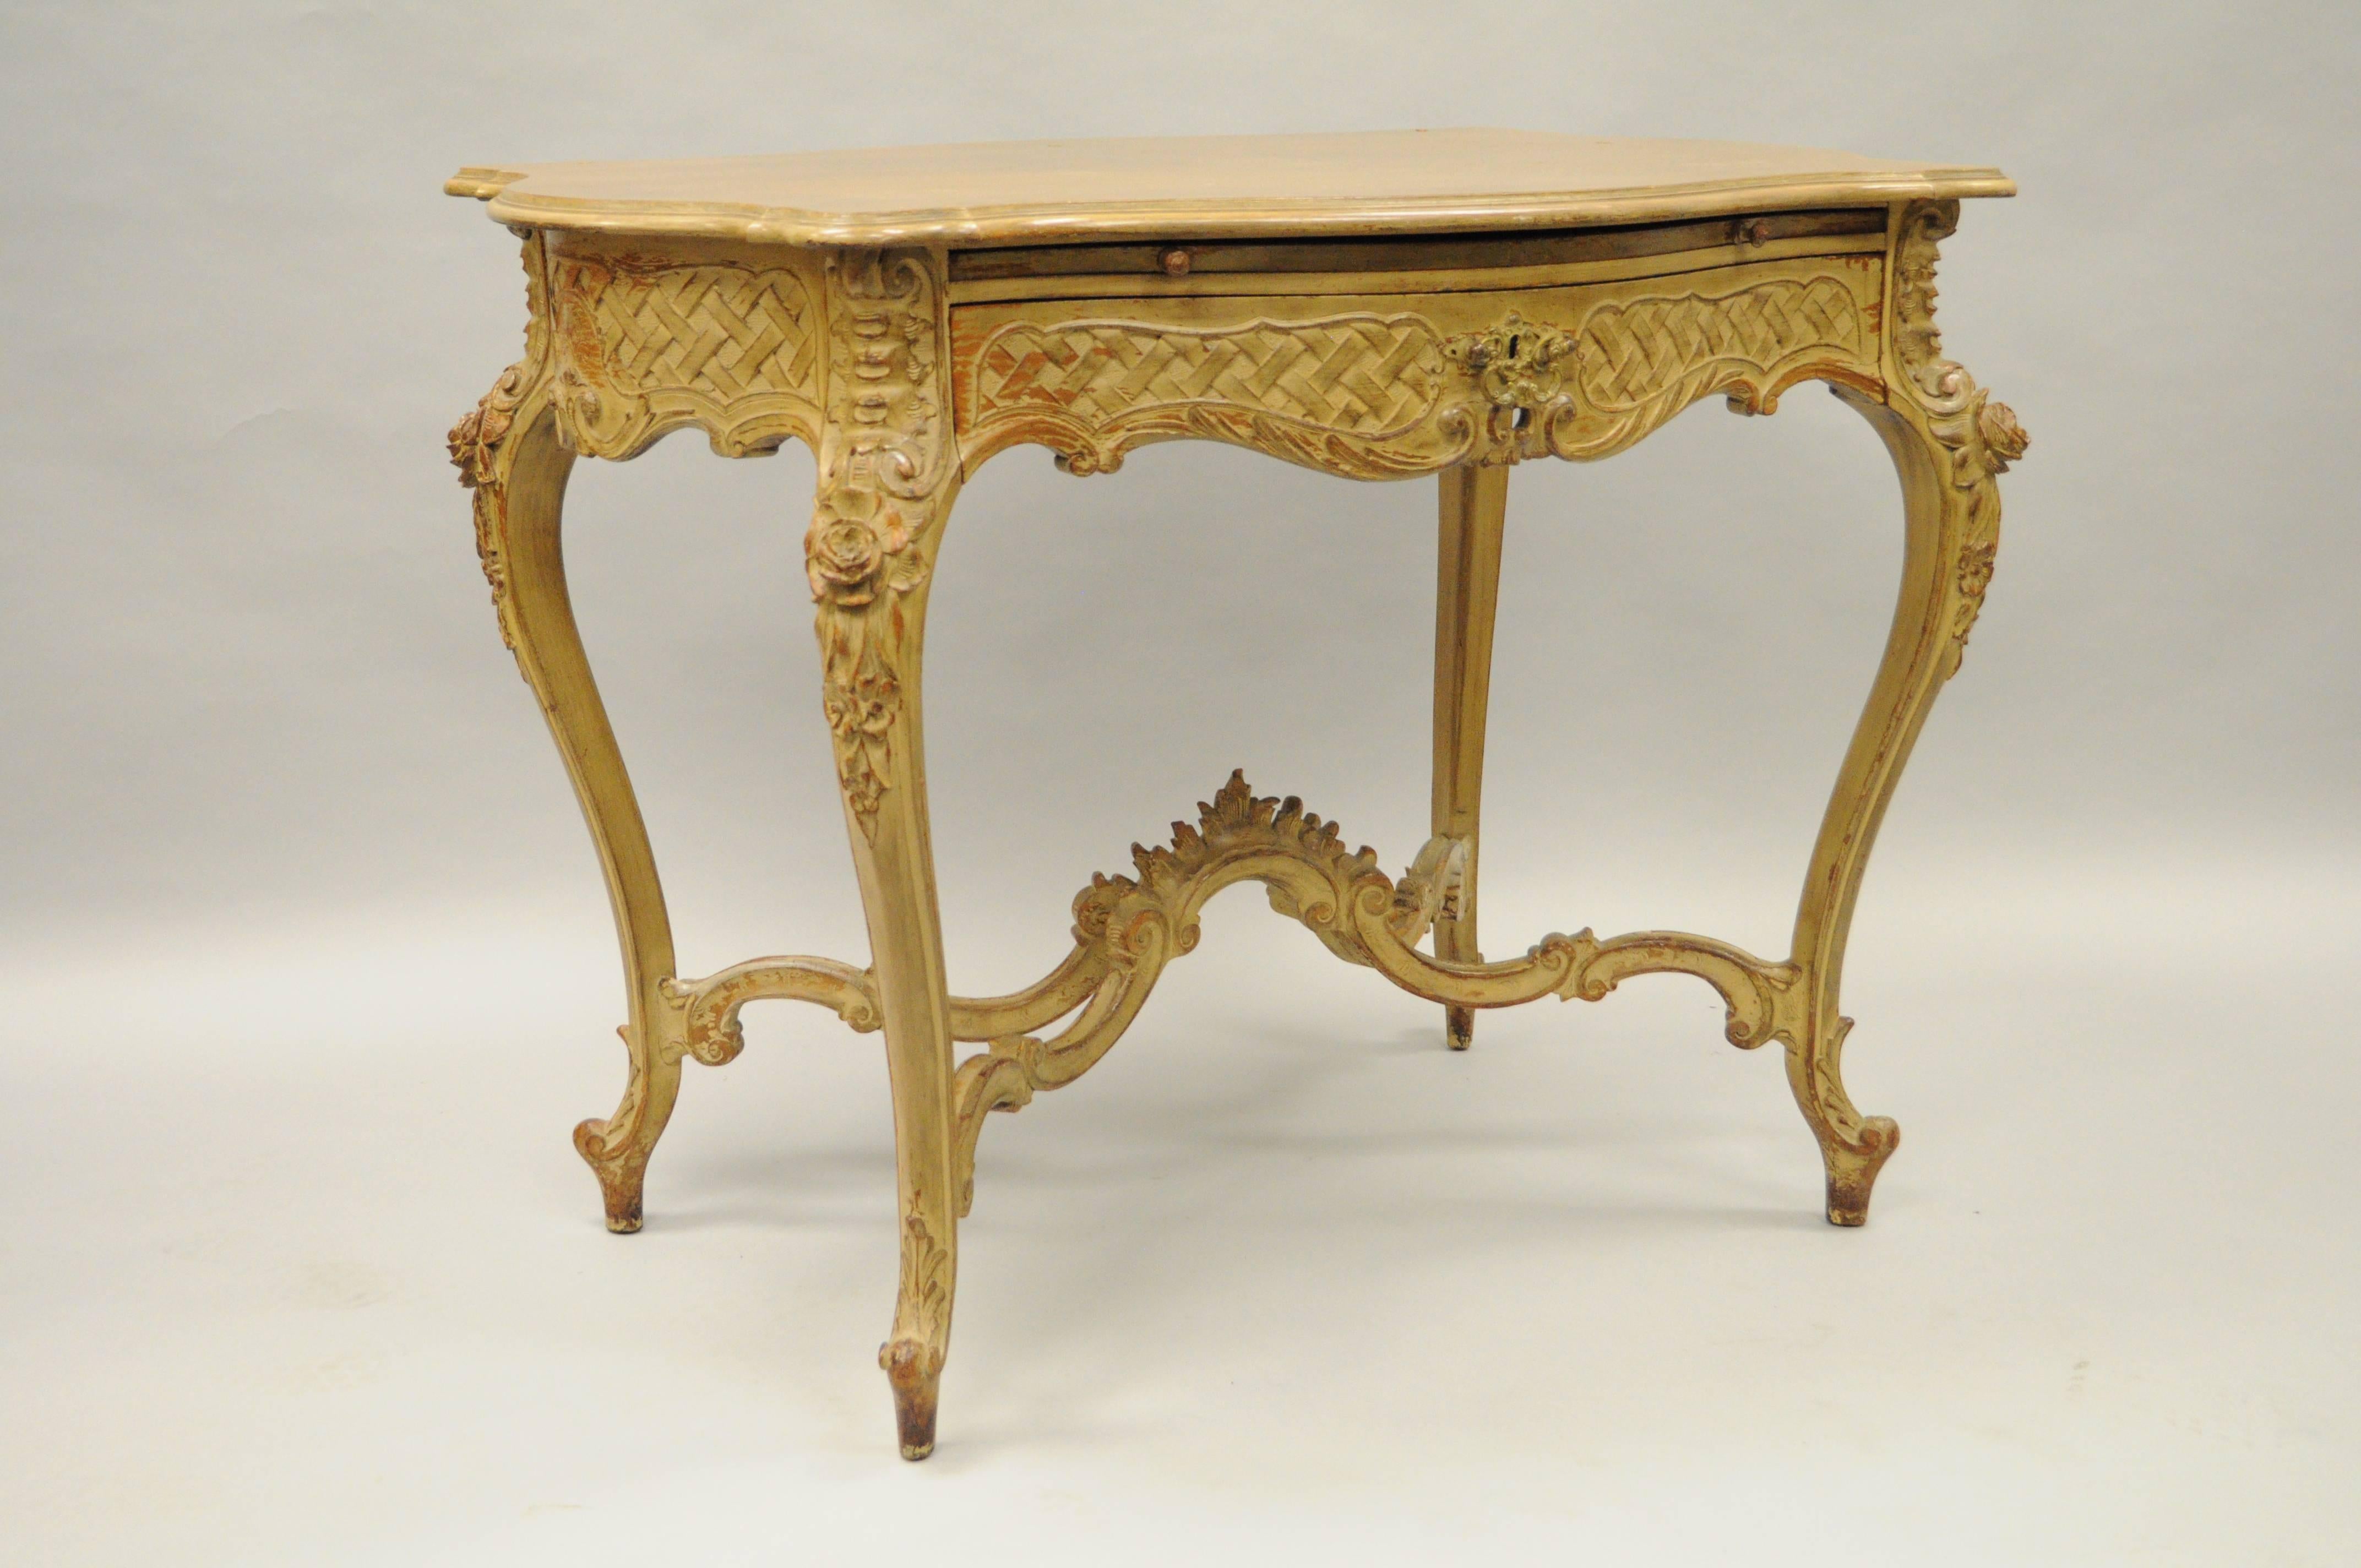 Antike Französisch Louis XV / Rokoko-Stil handgeschnitzt und distressed Schminktisch / Damen-Schreibtisch. Das Möbelstück verfügt über eine geformte Schildkrötenplatte mit Diamant-Sunburst-Furnier, eine einzelne, von Hand eingezapfte Schublade, eine